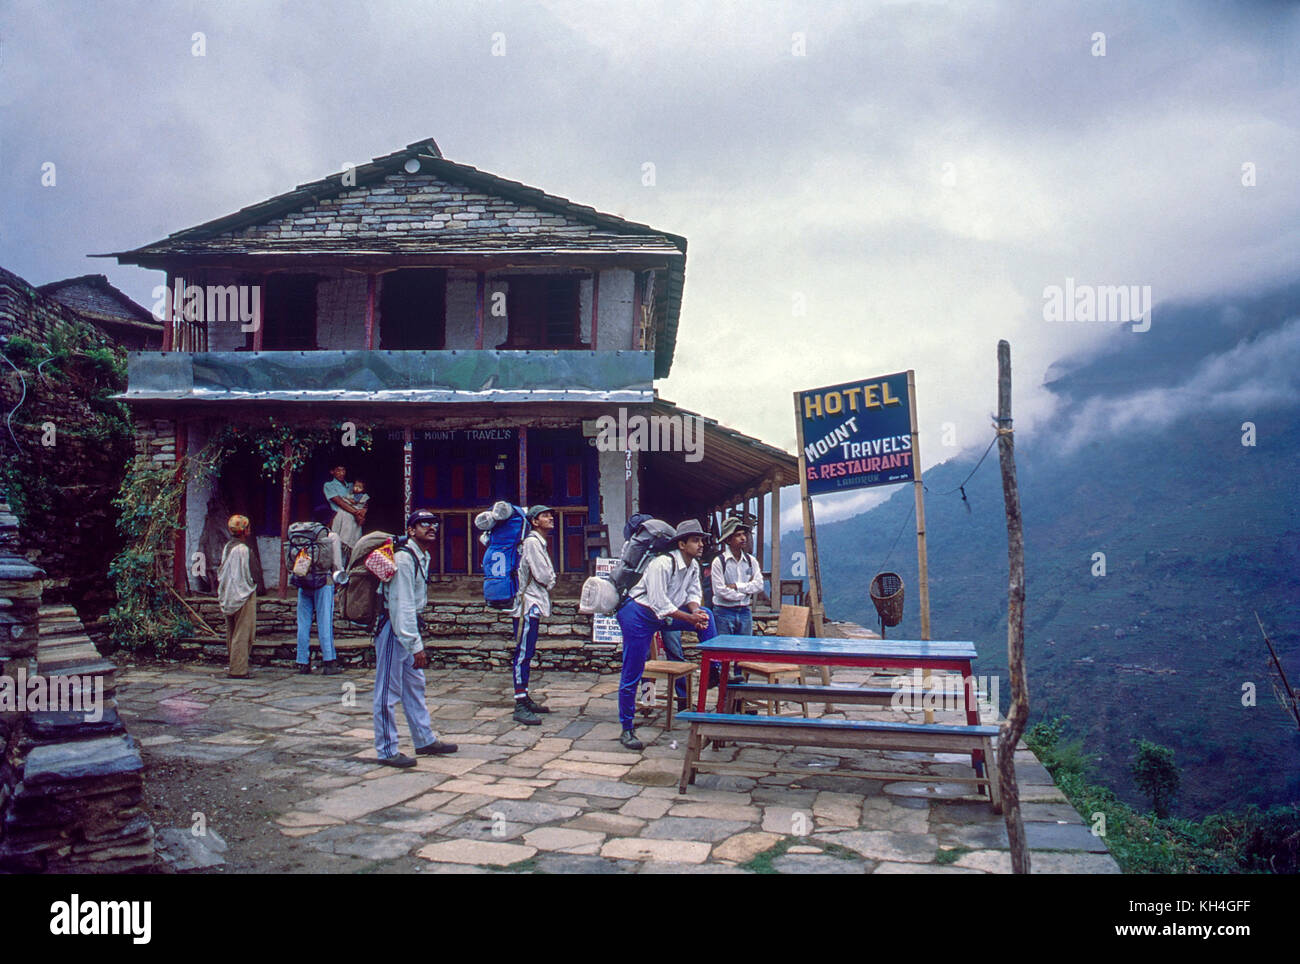 Hôtel mount voyages, landrum village sur la route du camp de base de l'Annapurna, Népal, Asie Banque D'Images